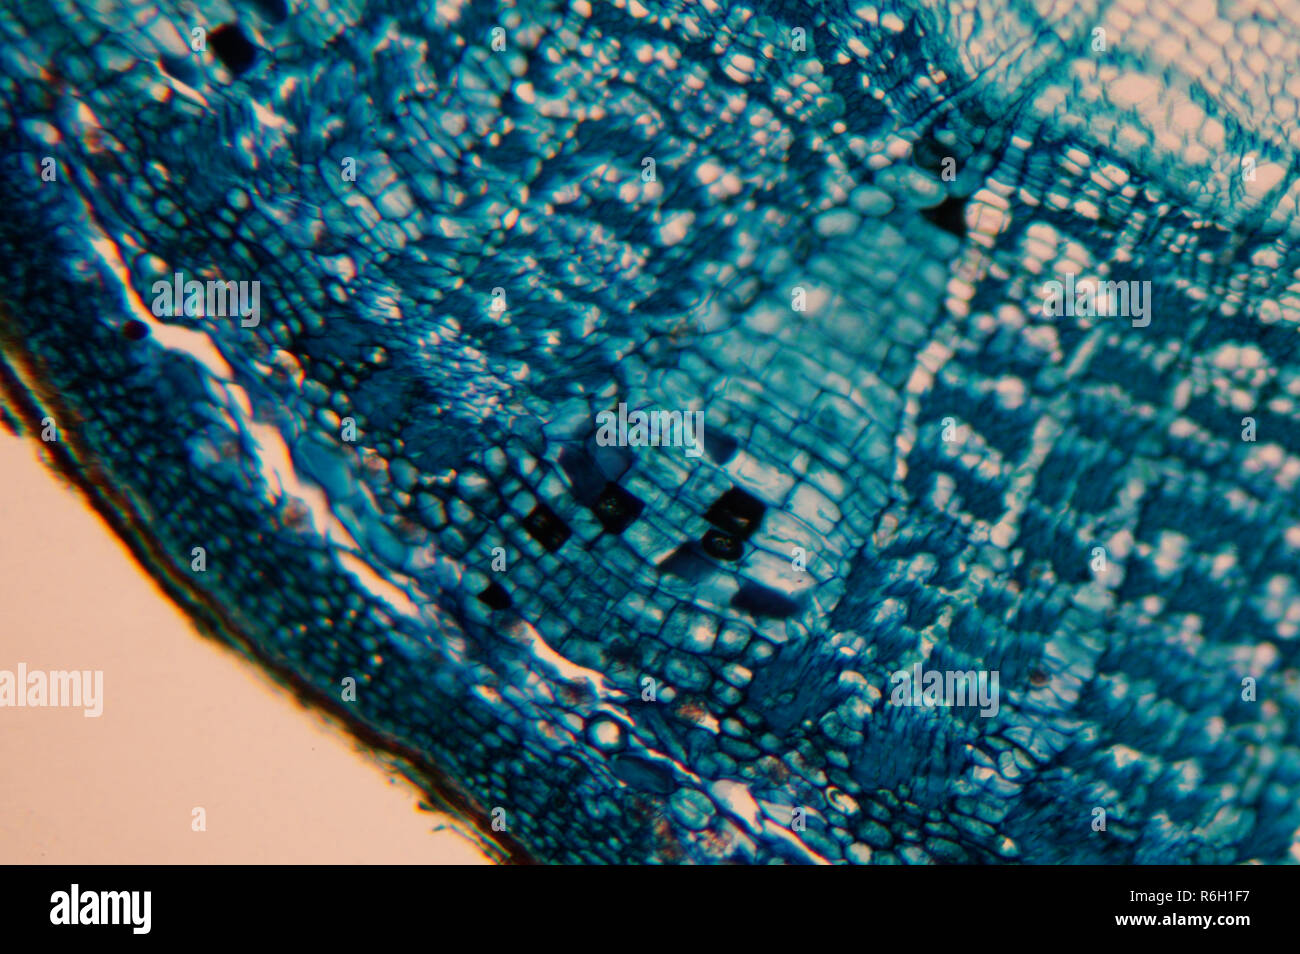 Cellule d'un organisme vivant dans le microscope Banque D'Images